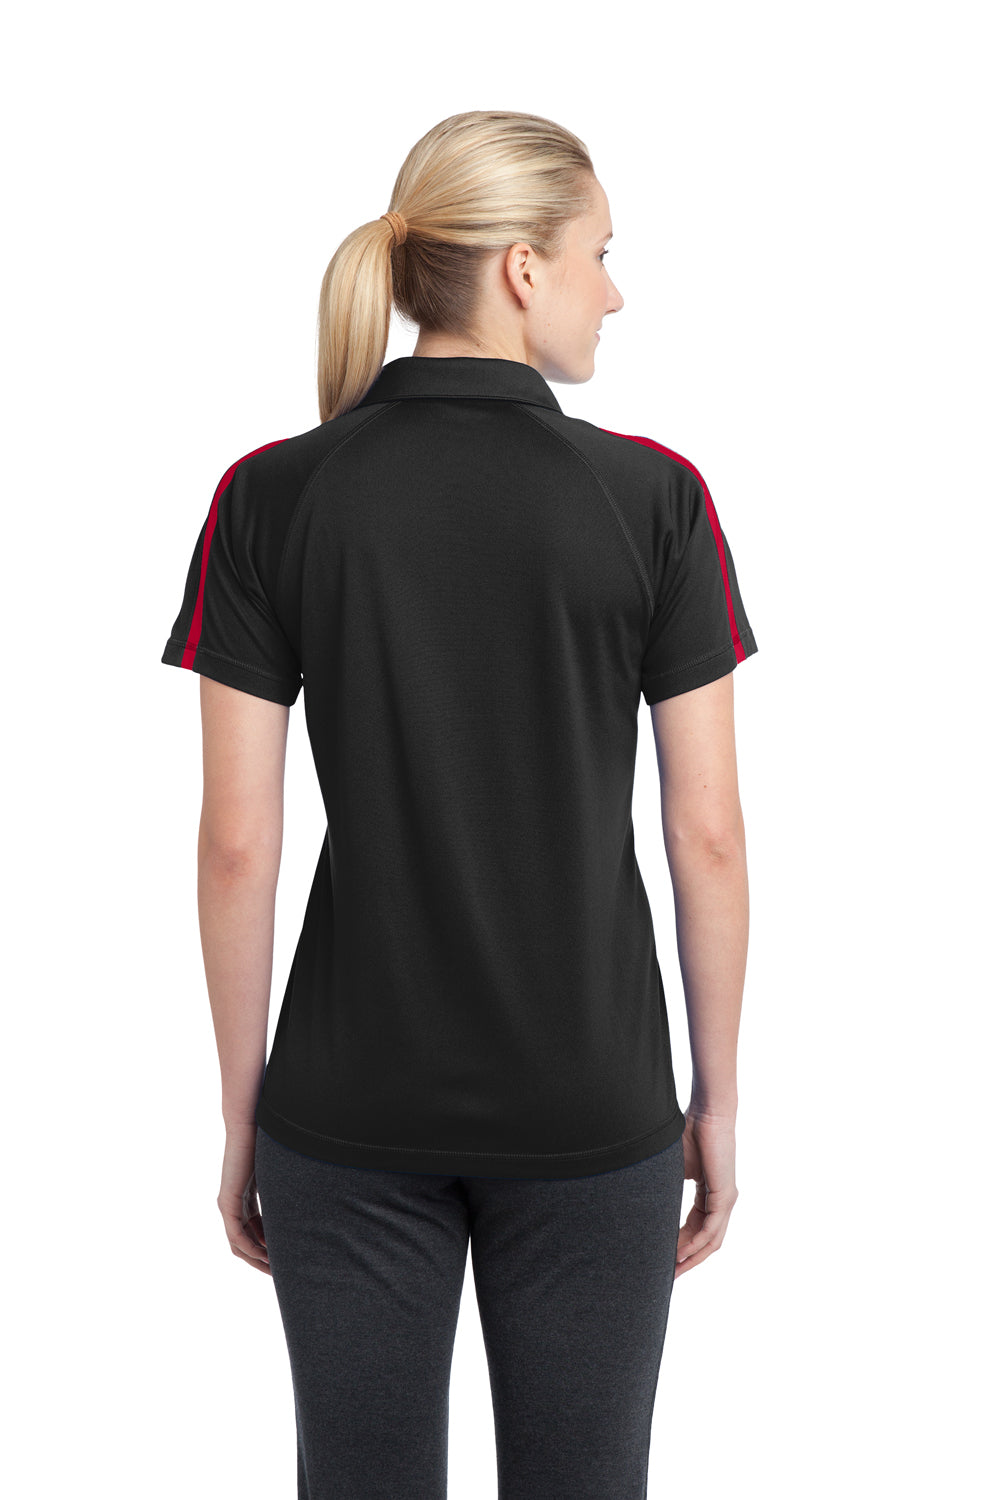 Sport-Tek LST685 Womens Micro-Mesh Moisture Wicking Short Sleeve Polo Shirt Black/Red Back